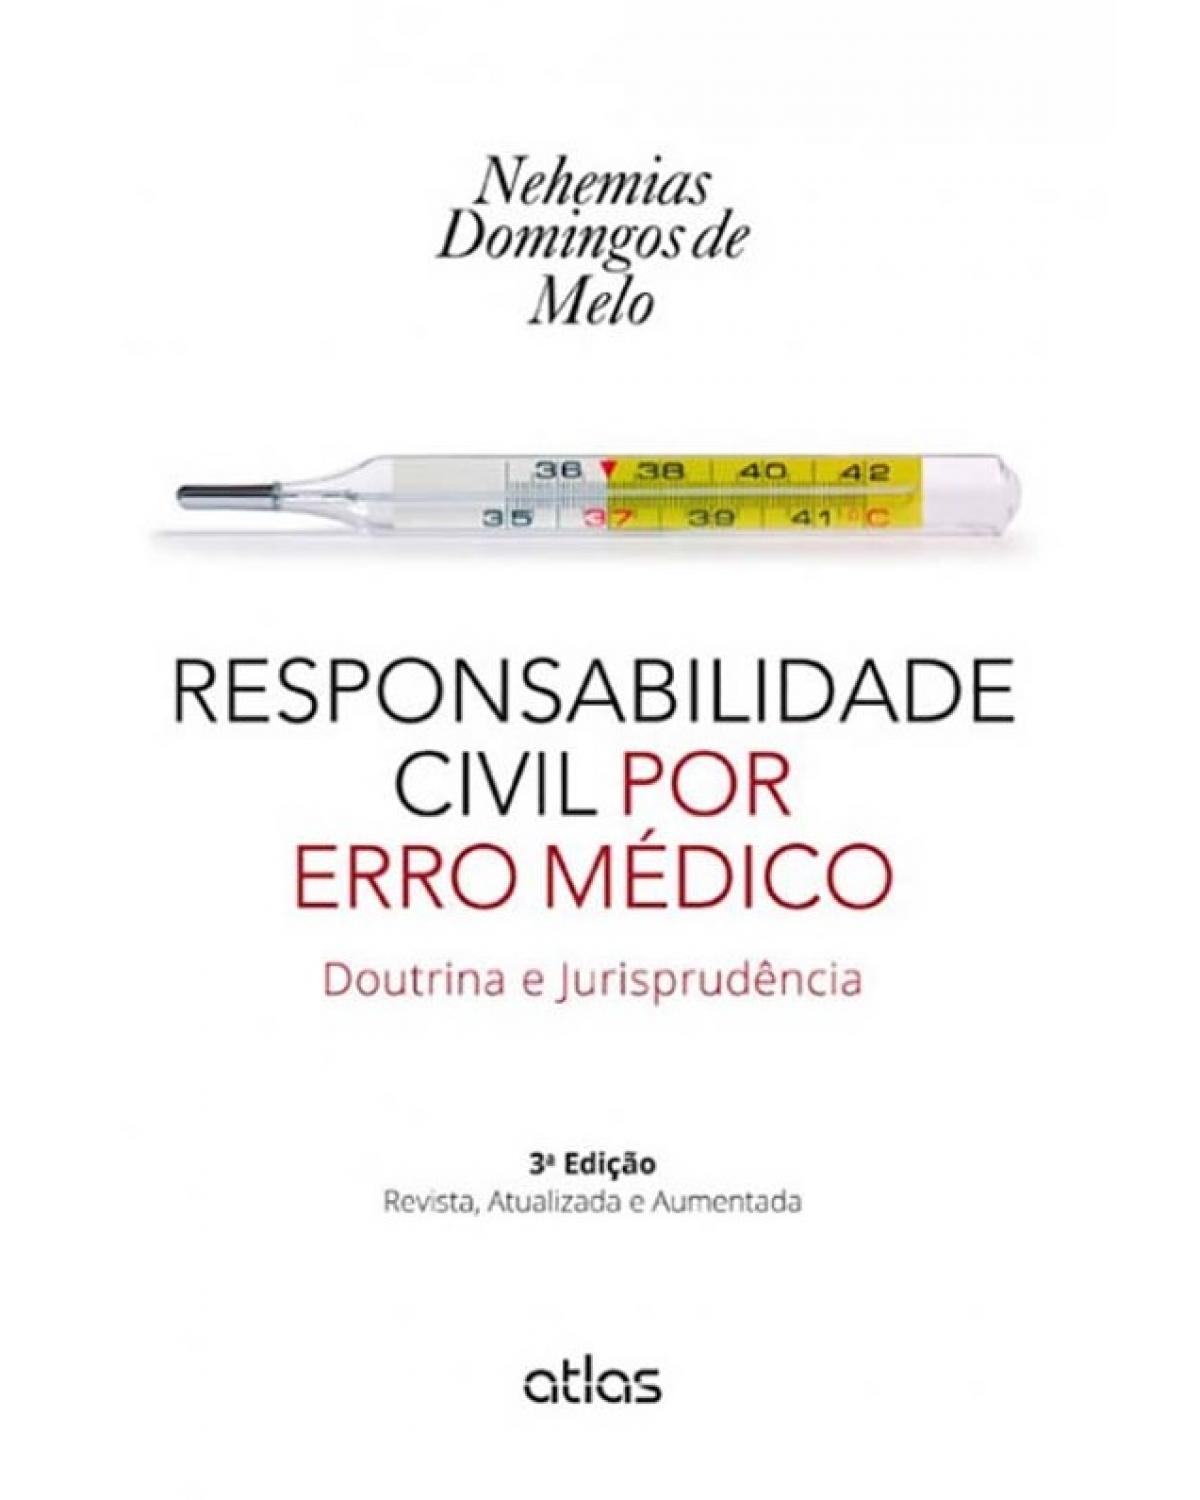 Responsabilidade civil por erro médico - Doutrina e jurisprudência - 3ª Edição | 2014